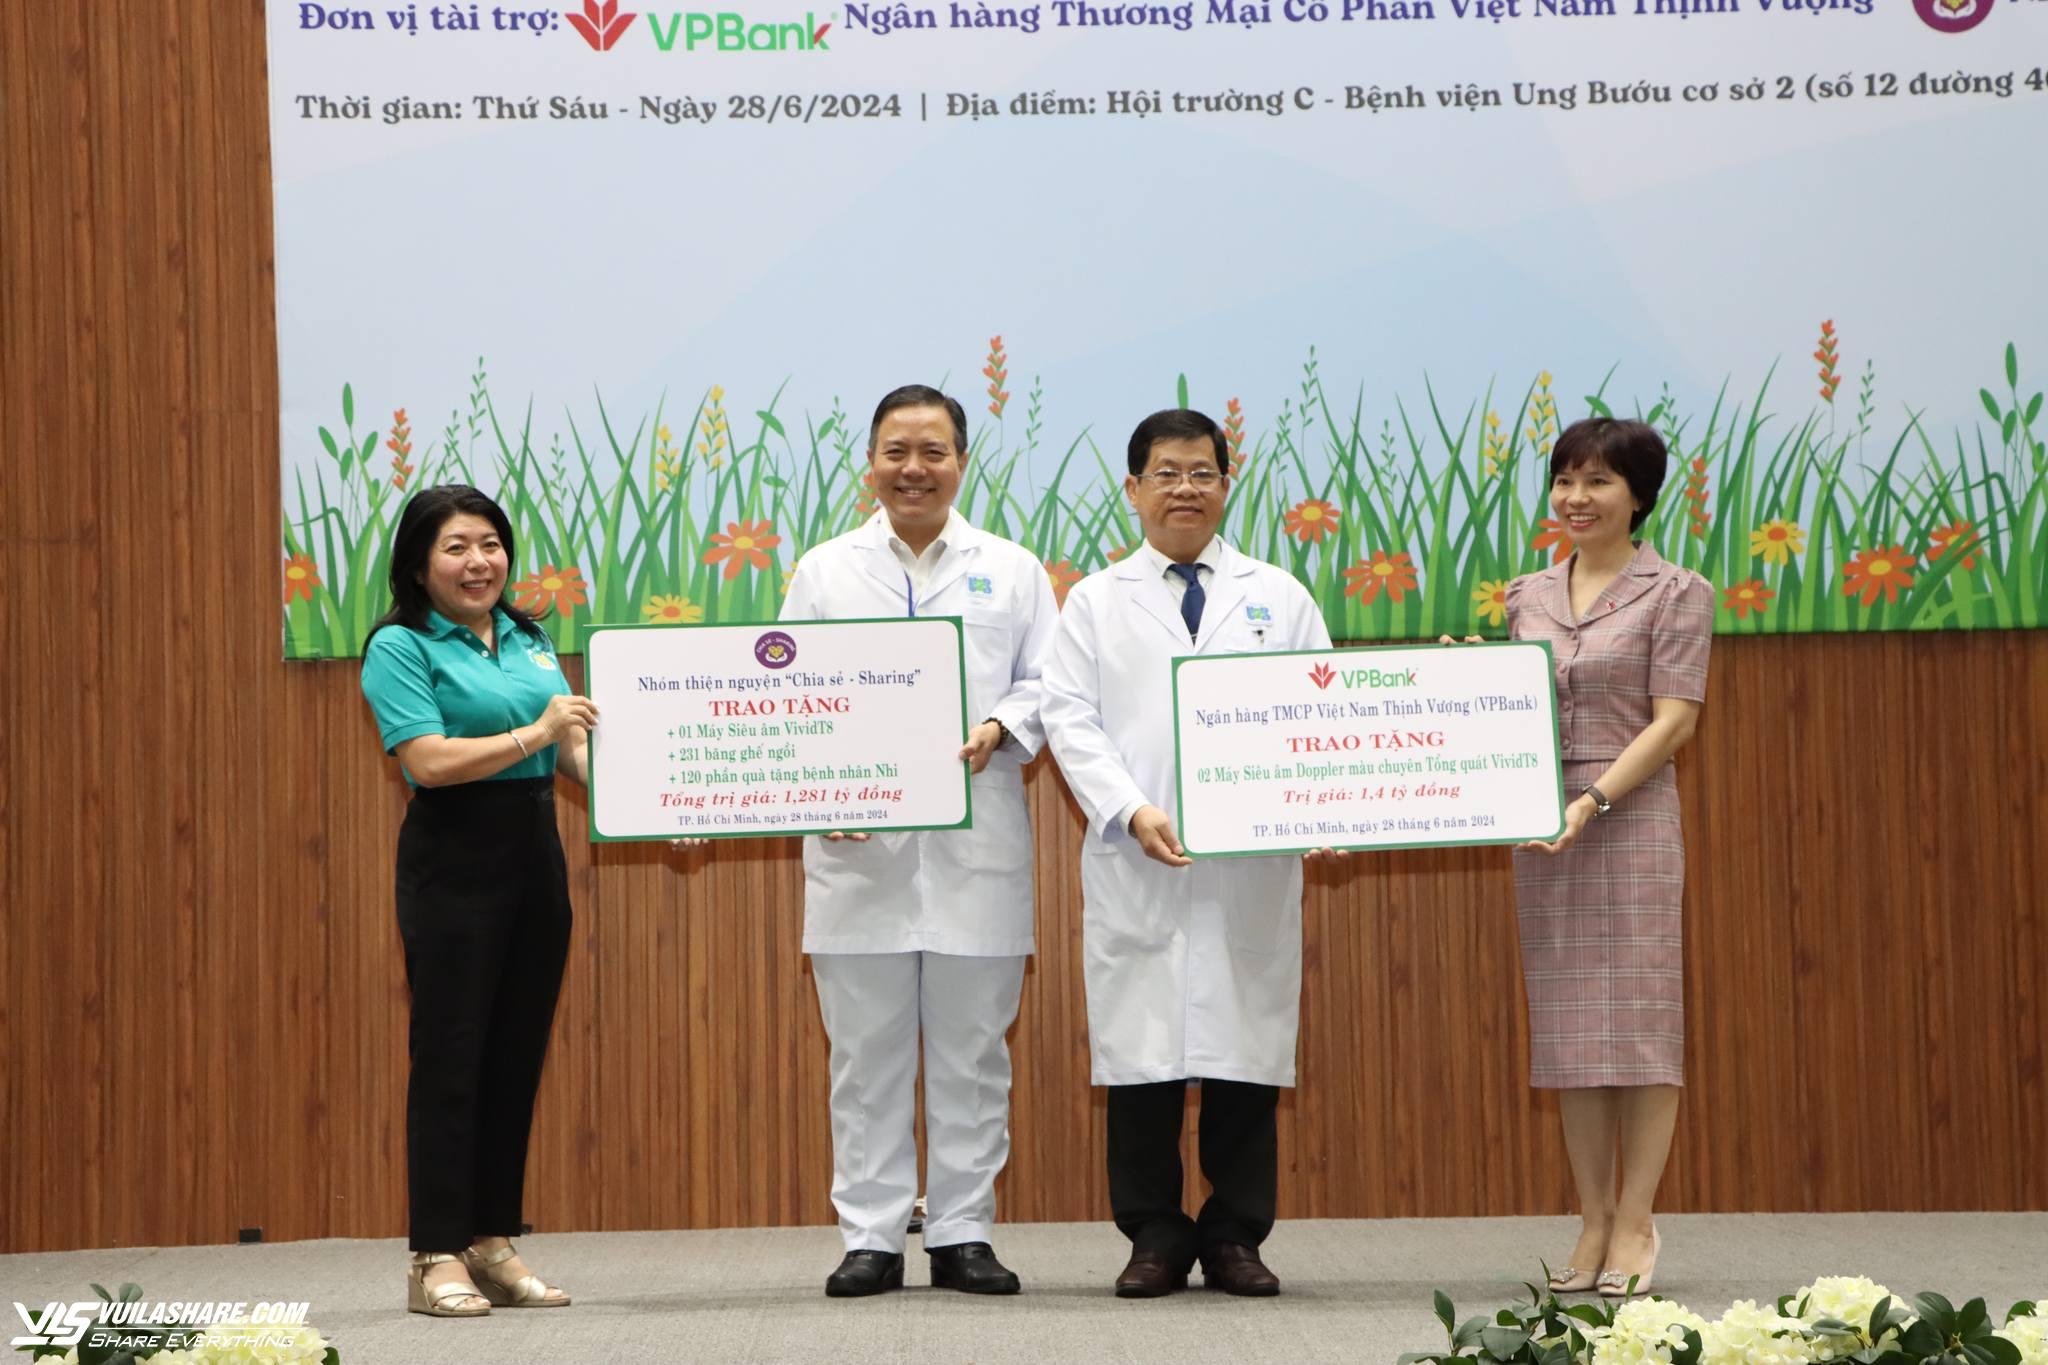 Nguyên Chủ tịch nước Trương Tấn Sang tặng Bệnh viện Ung bướu TP.HCM 3 máy siêu âm- Ảnh 3.